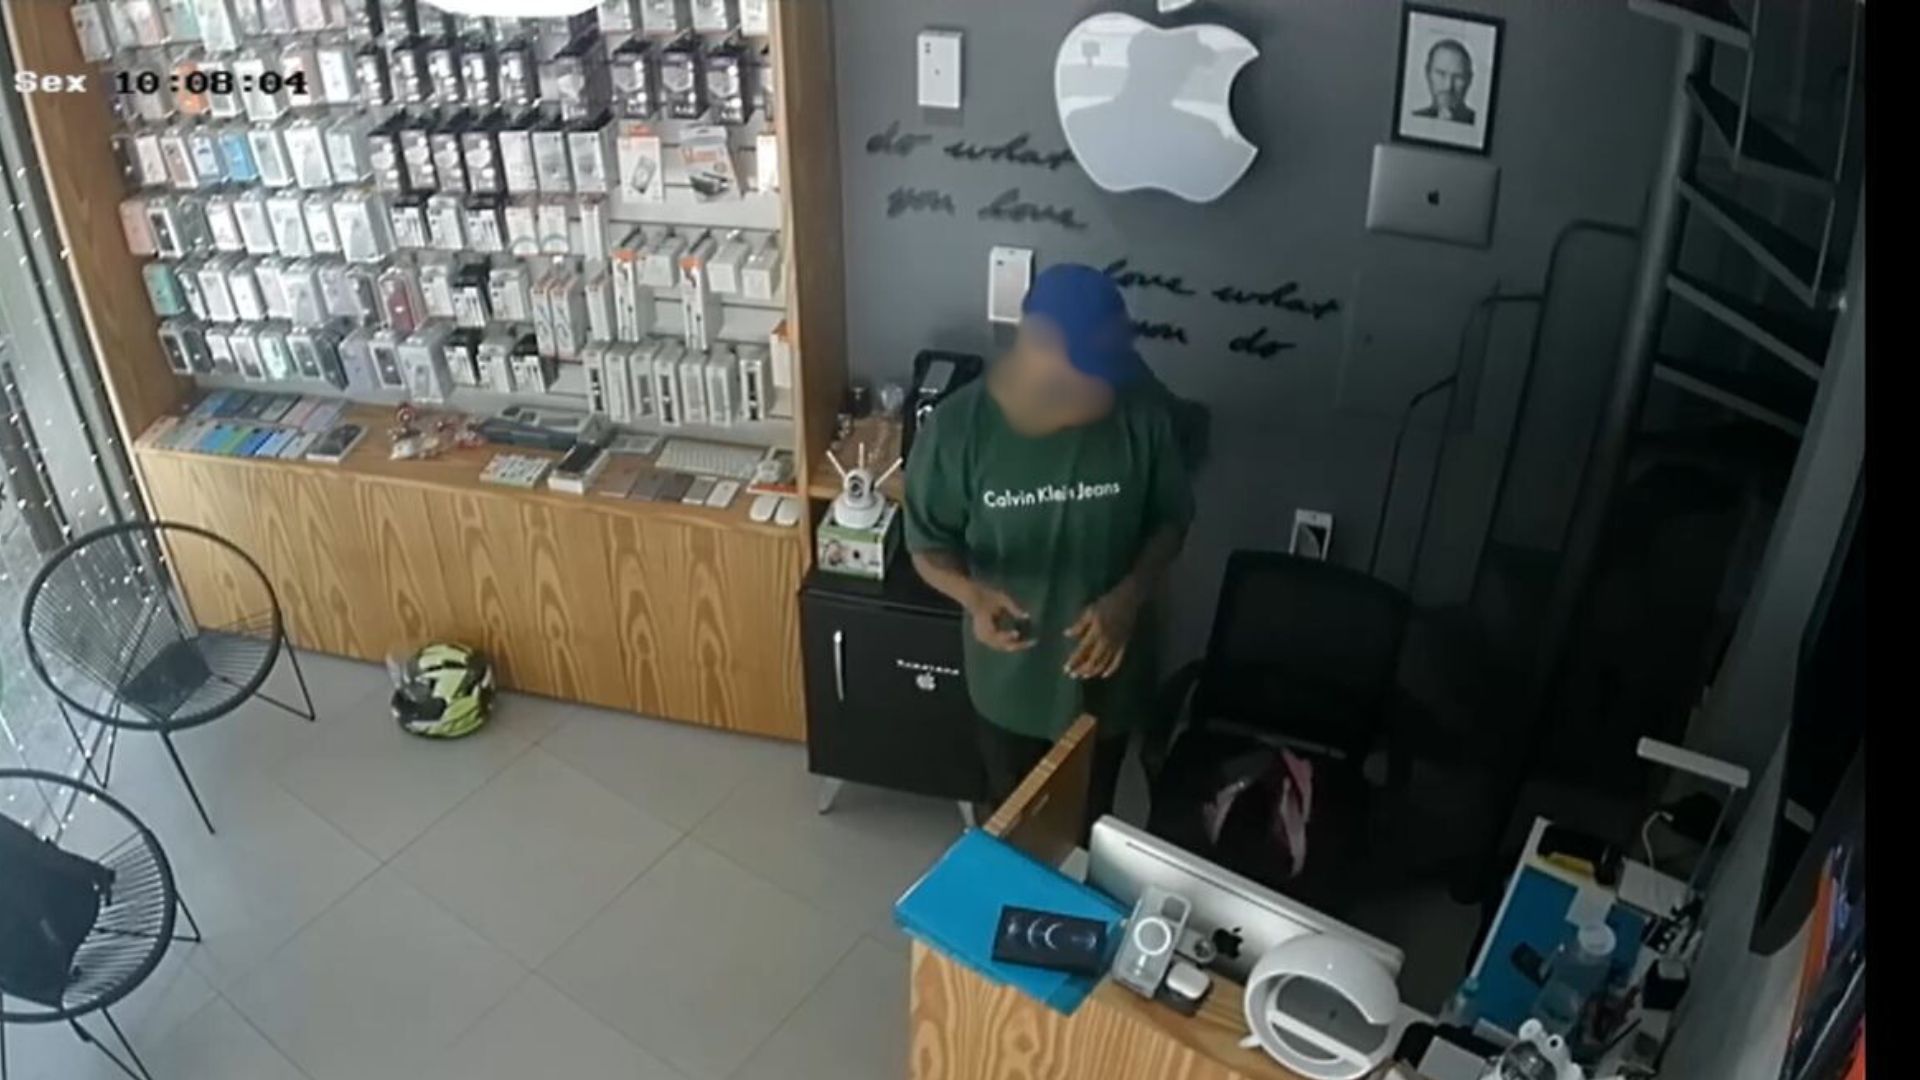 Criminosos roubaram aparelhos iPhone e obrigaram funcionária a fazer Pix, na manhã de sexta (9). Segundo o dono, loja já foi assaltada outras vezes